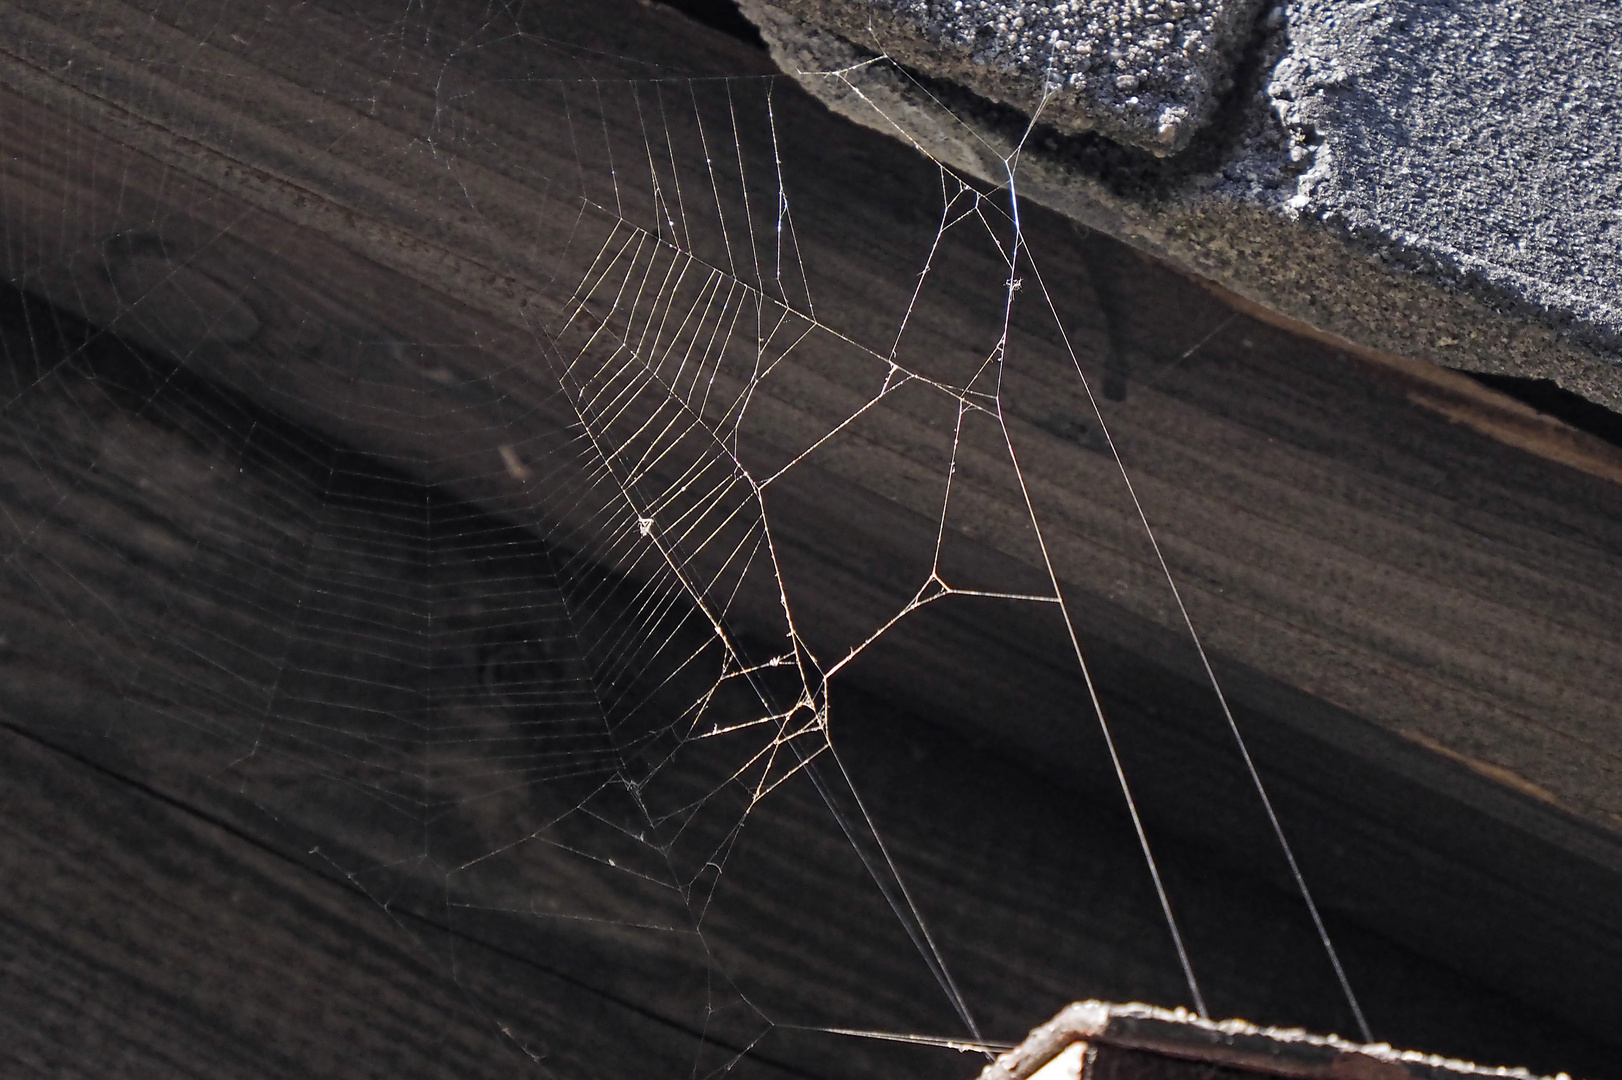 Das filigrane Netz einer Spinne unter der Dachtraufe, leider ohne Spinne :-(